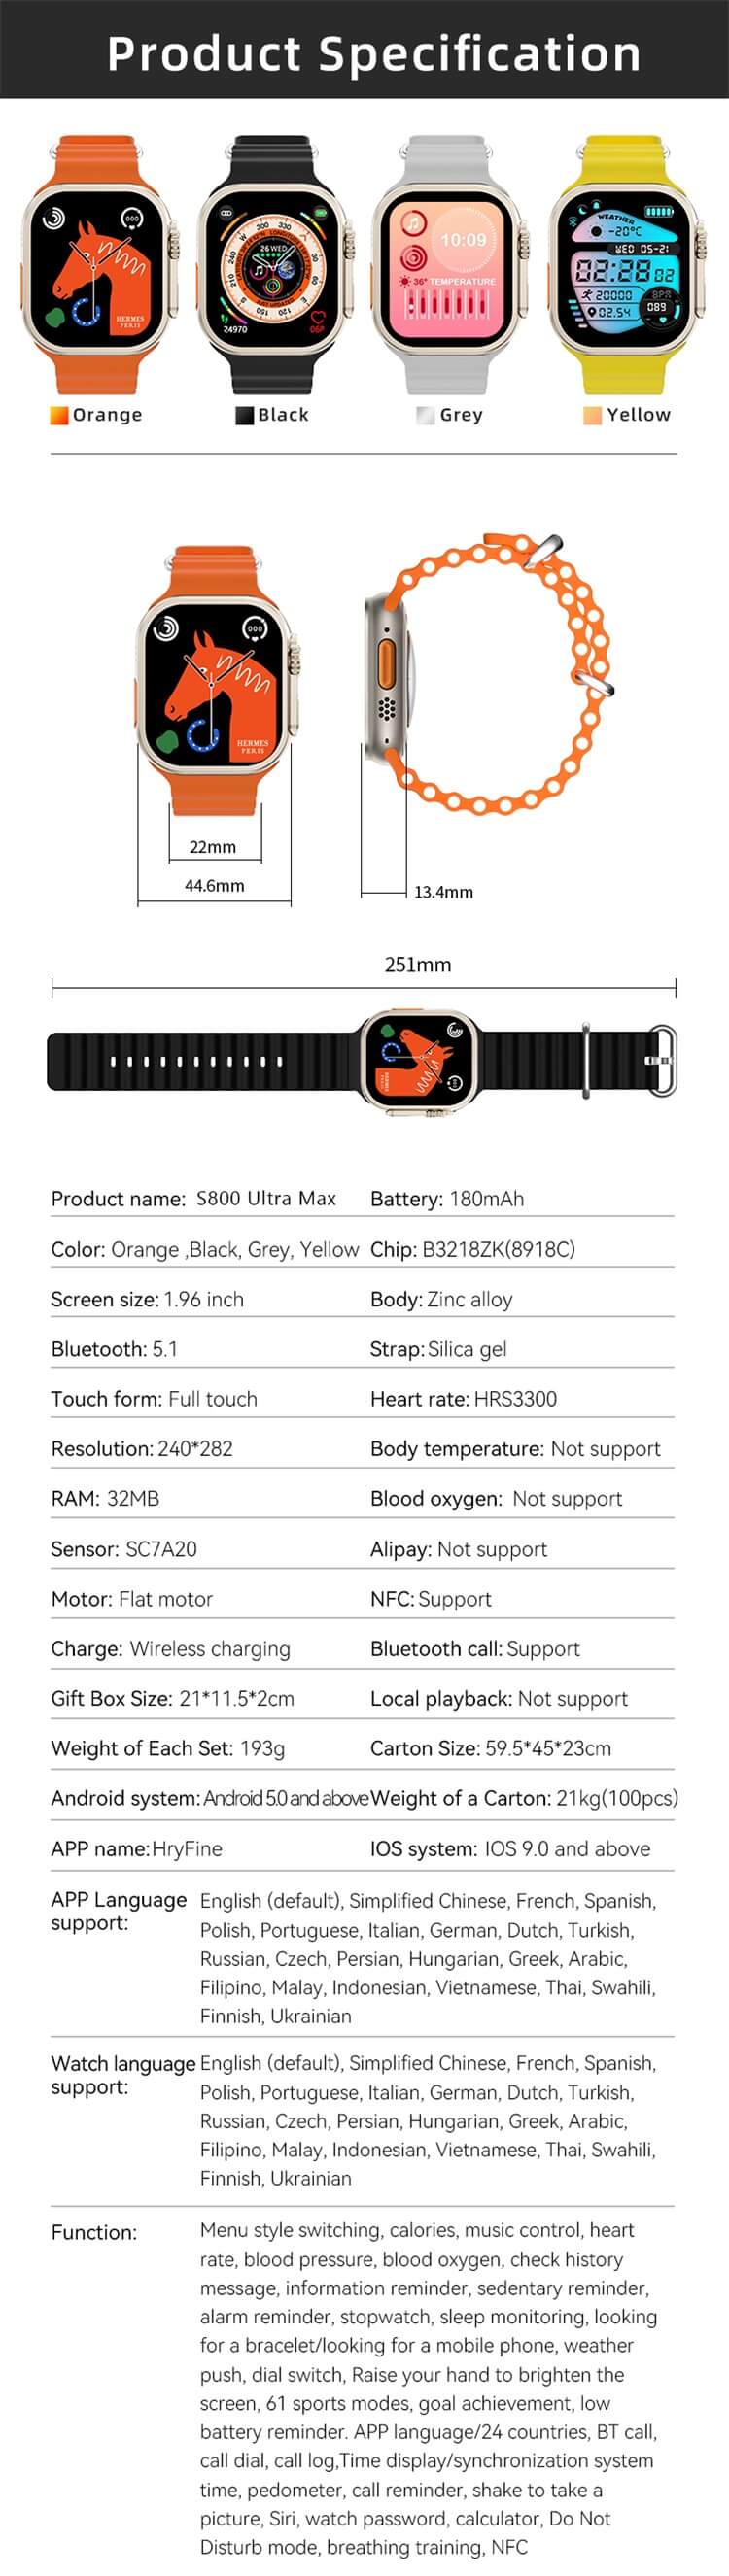 S800 अल्ट्रा मैक्स स्मार्ट वॉच-शेन्ज़ेन शेंगये टेक्नोलॉजी कंपनी लिमिटेड